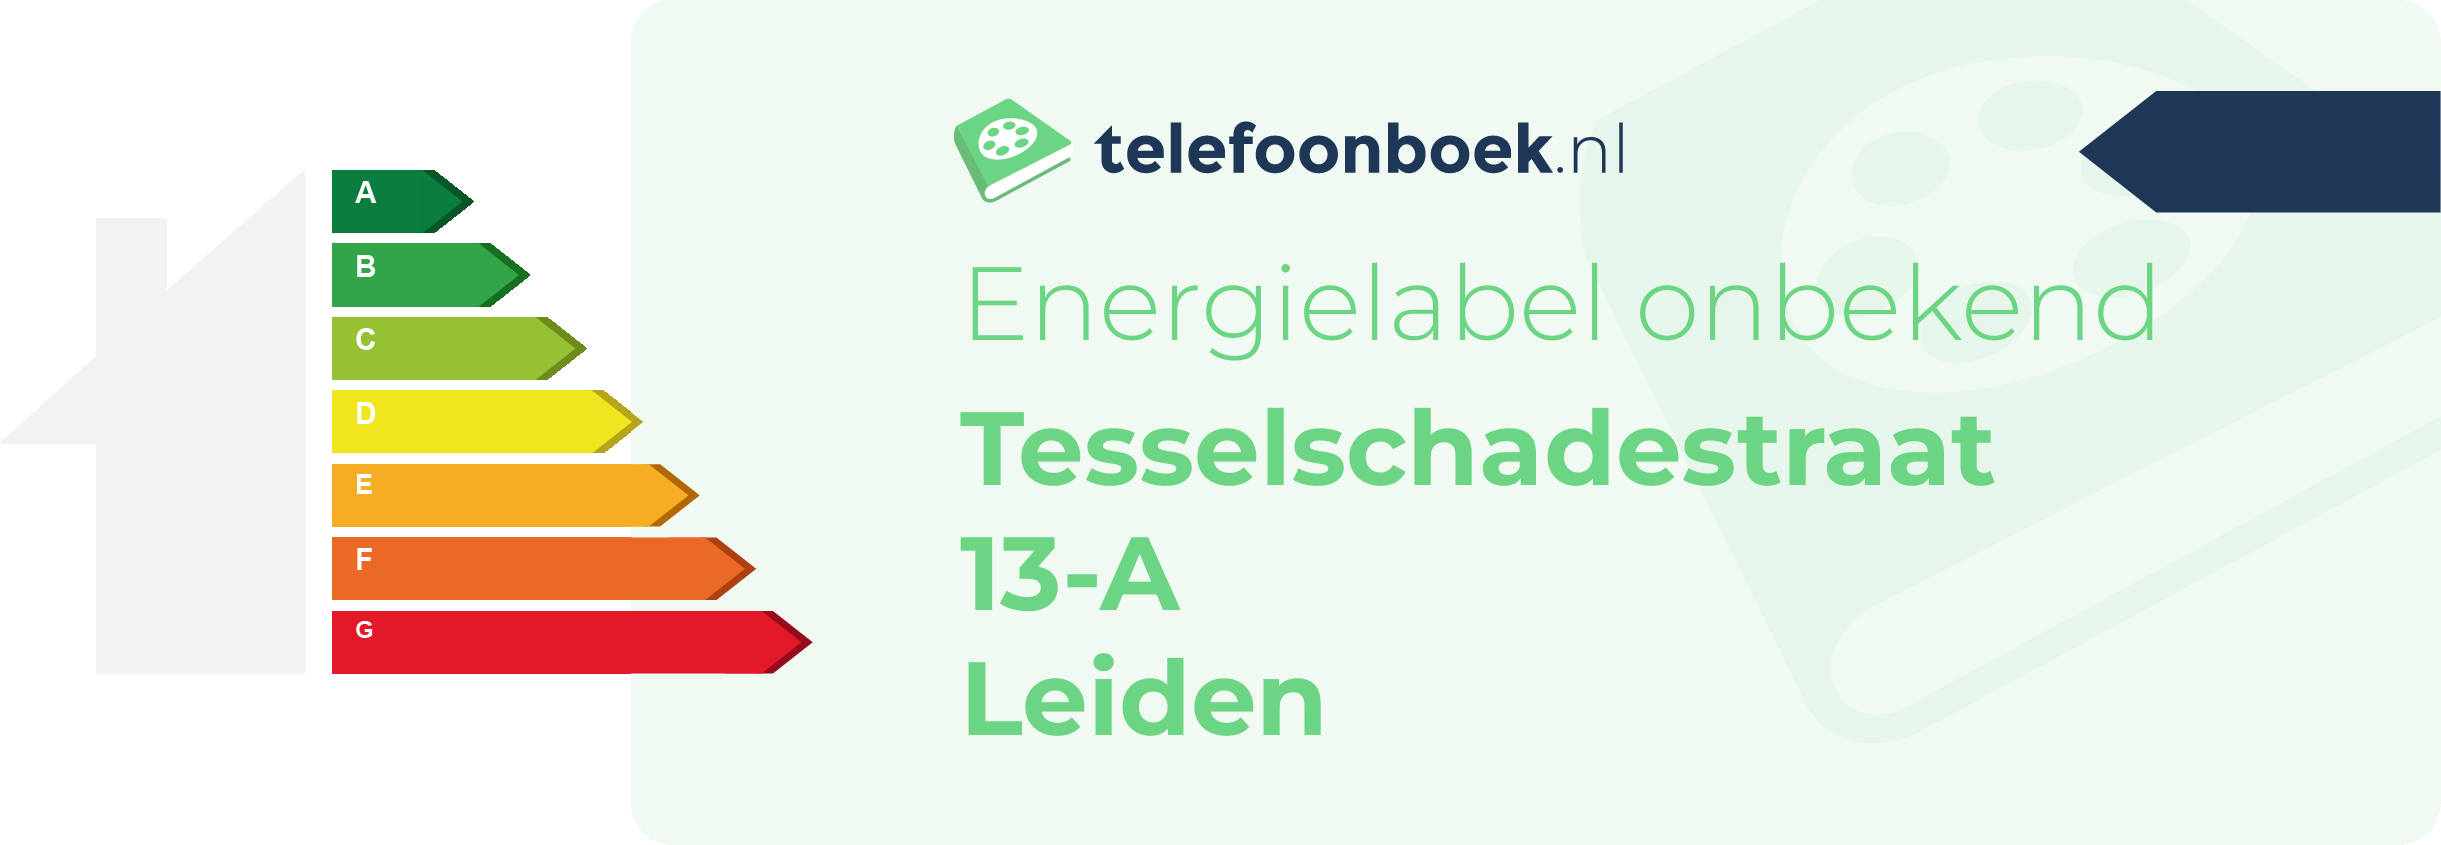 Energielabel Tesselschadestraat 13-A Leiden